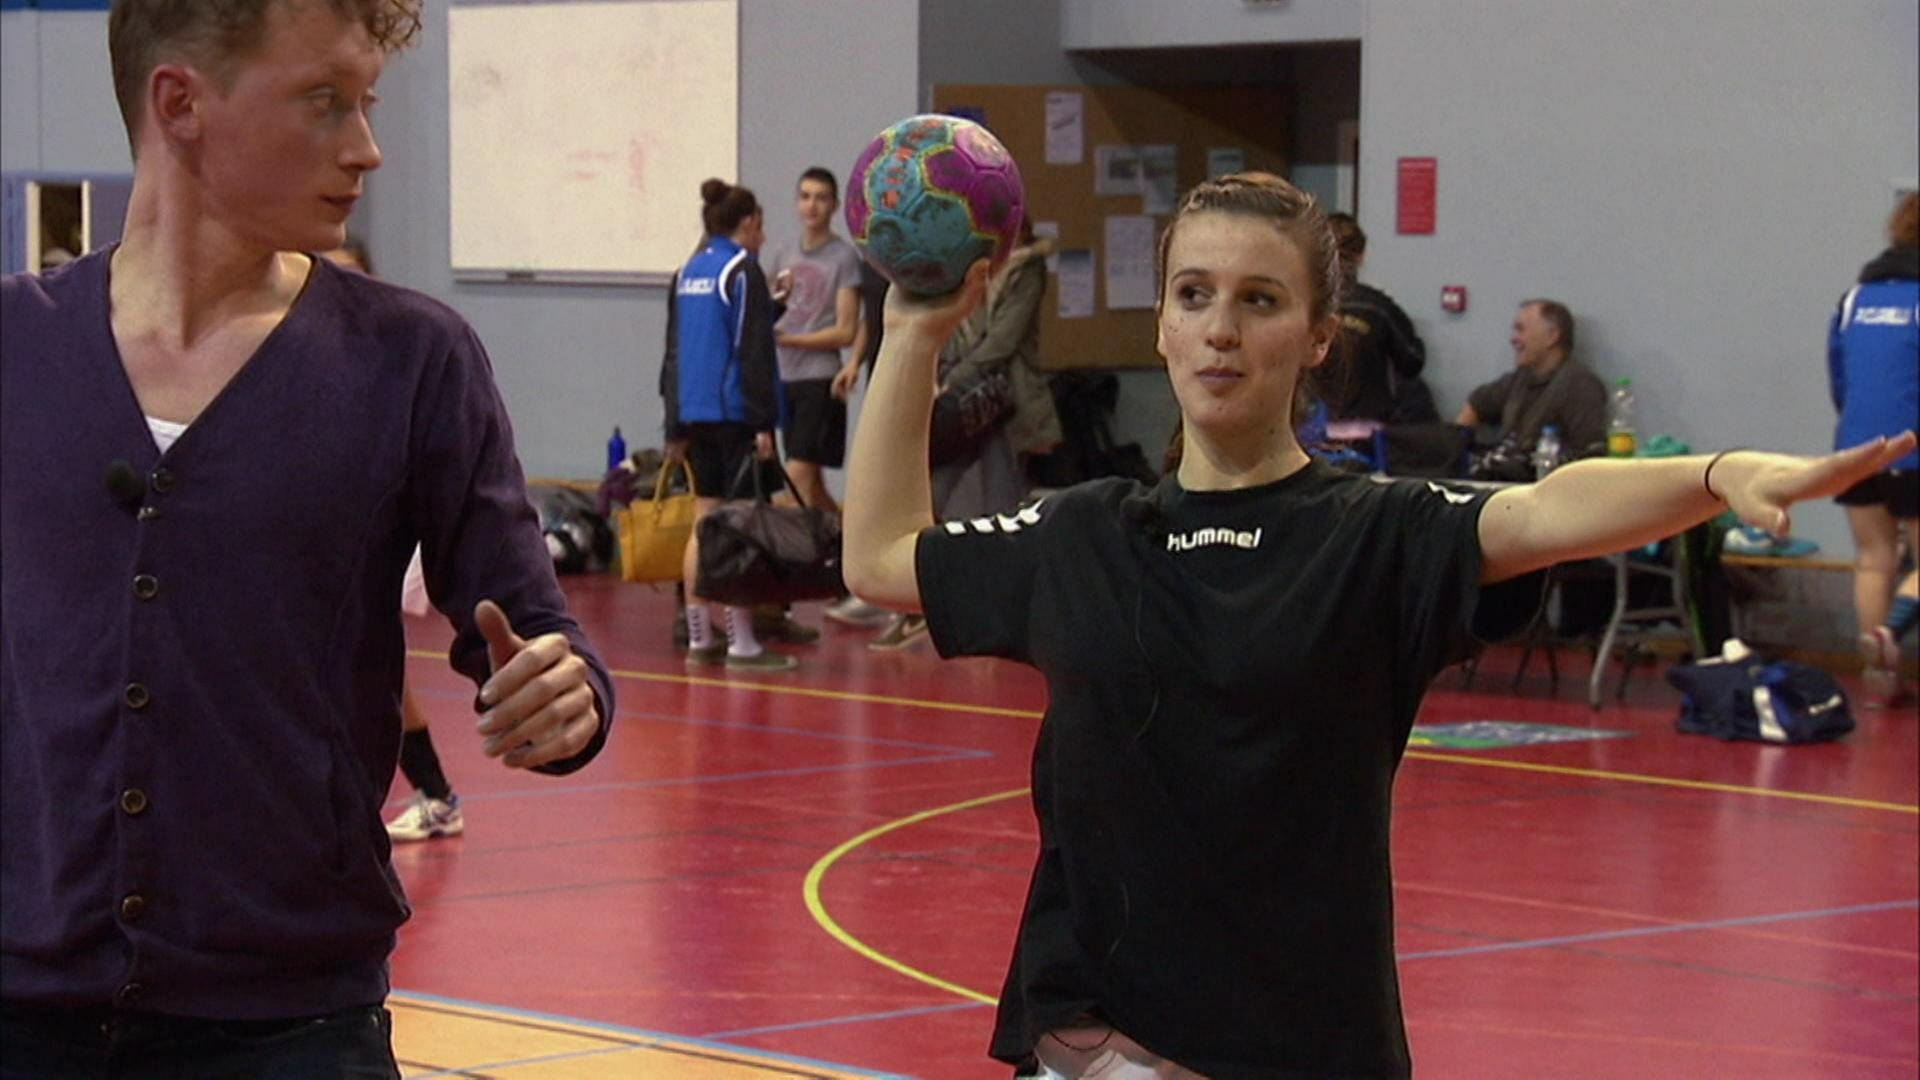 Zwei junge Menschen trainieren in einer Sporthalle Handball.